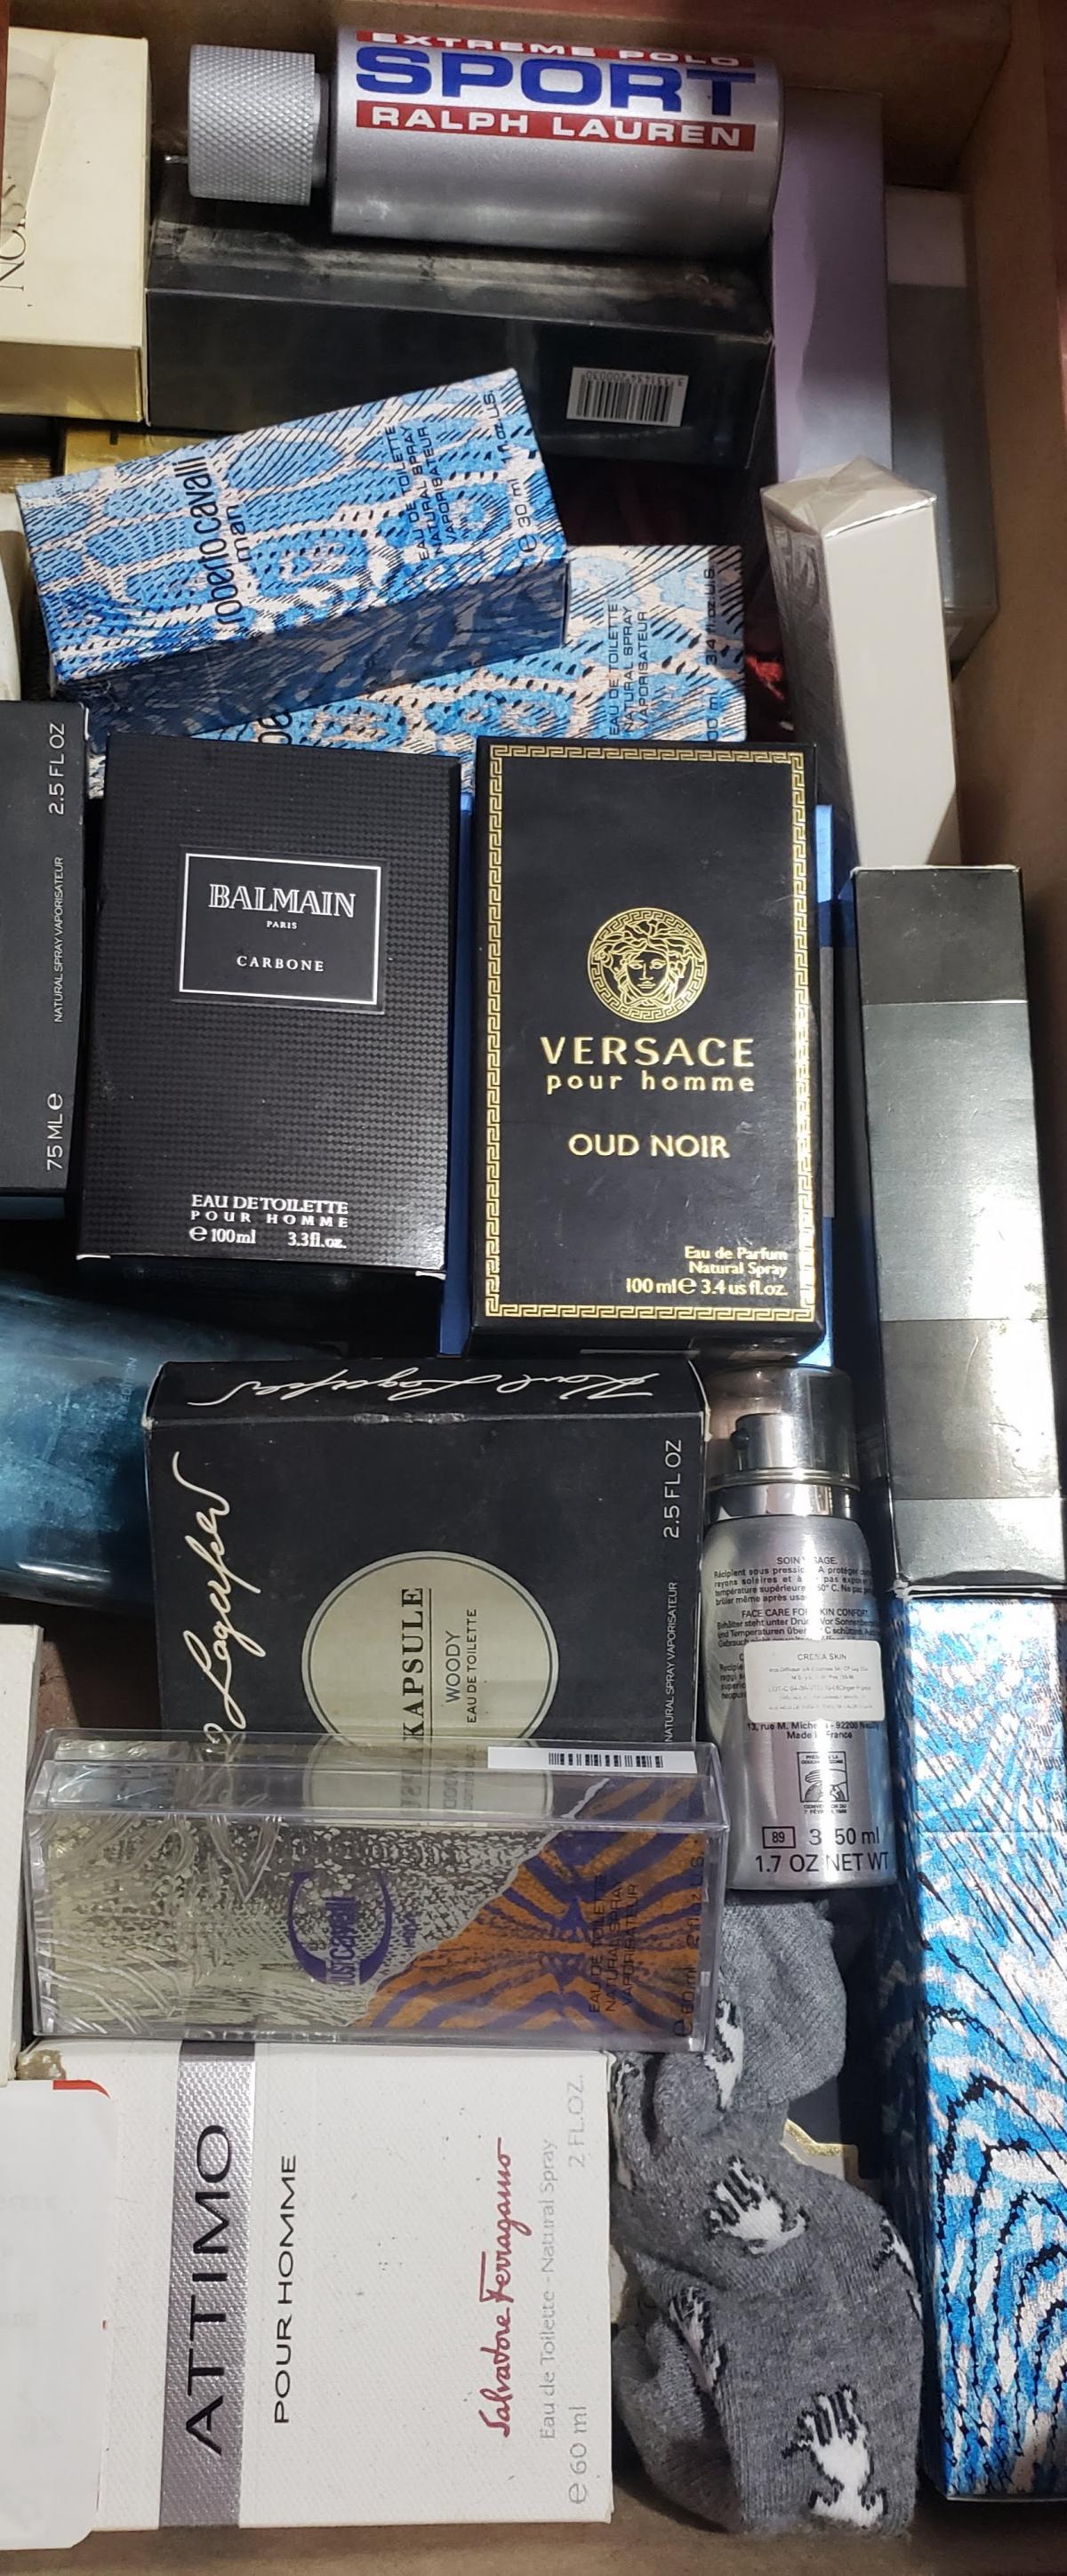 Versace Pour Homme Oud Noir Versace cologne - a fragrance for men 2013